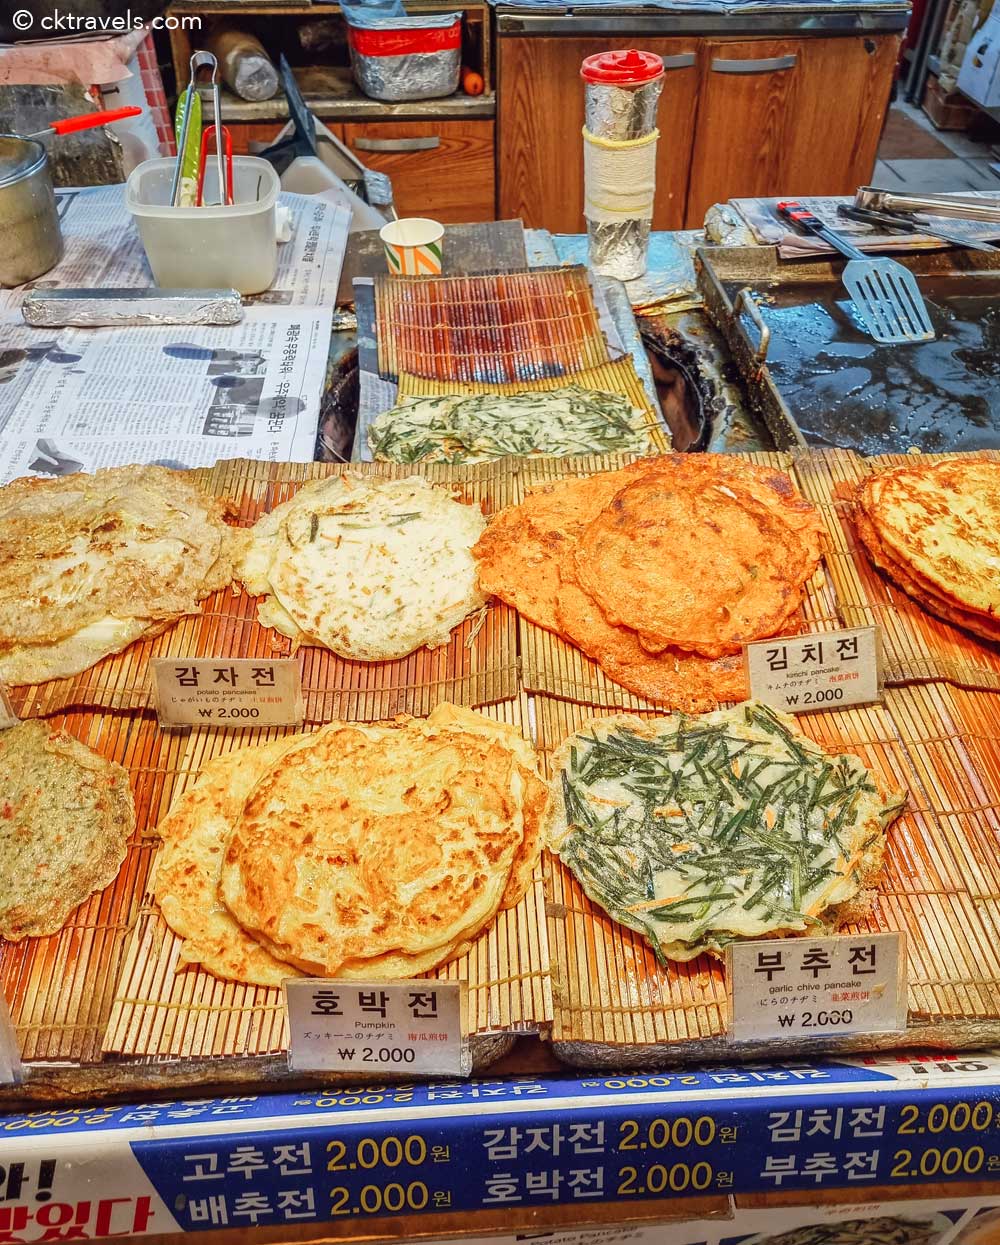 Korean Pancakes (Buchimgae) at Haeundae Traditional Market - Busan's best food market